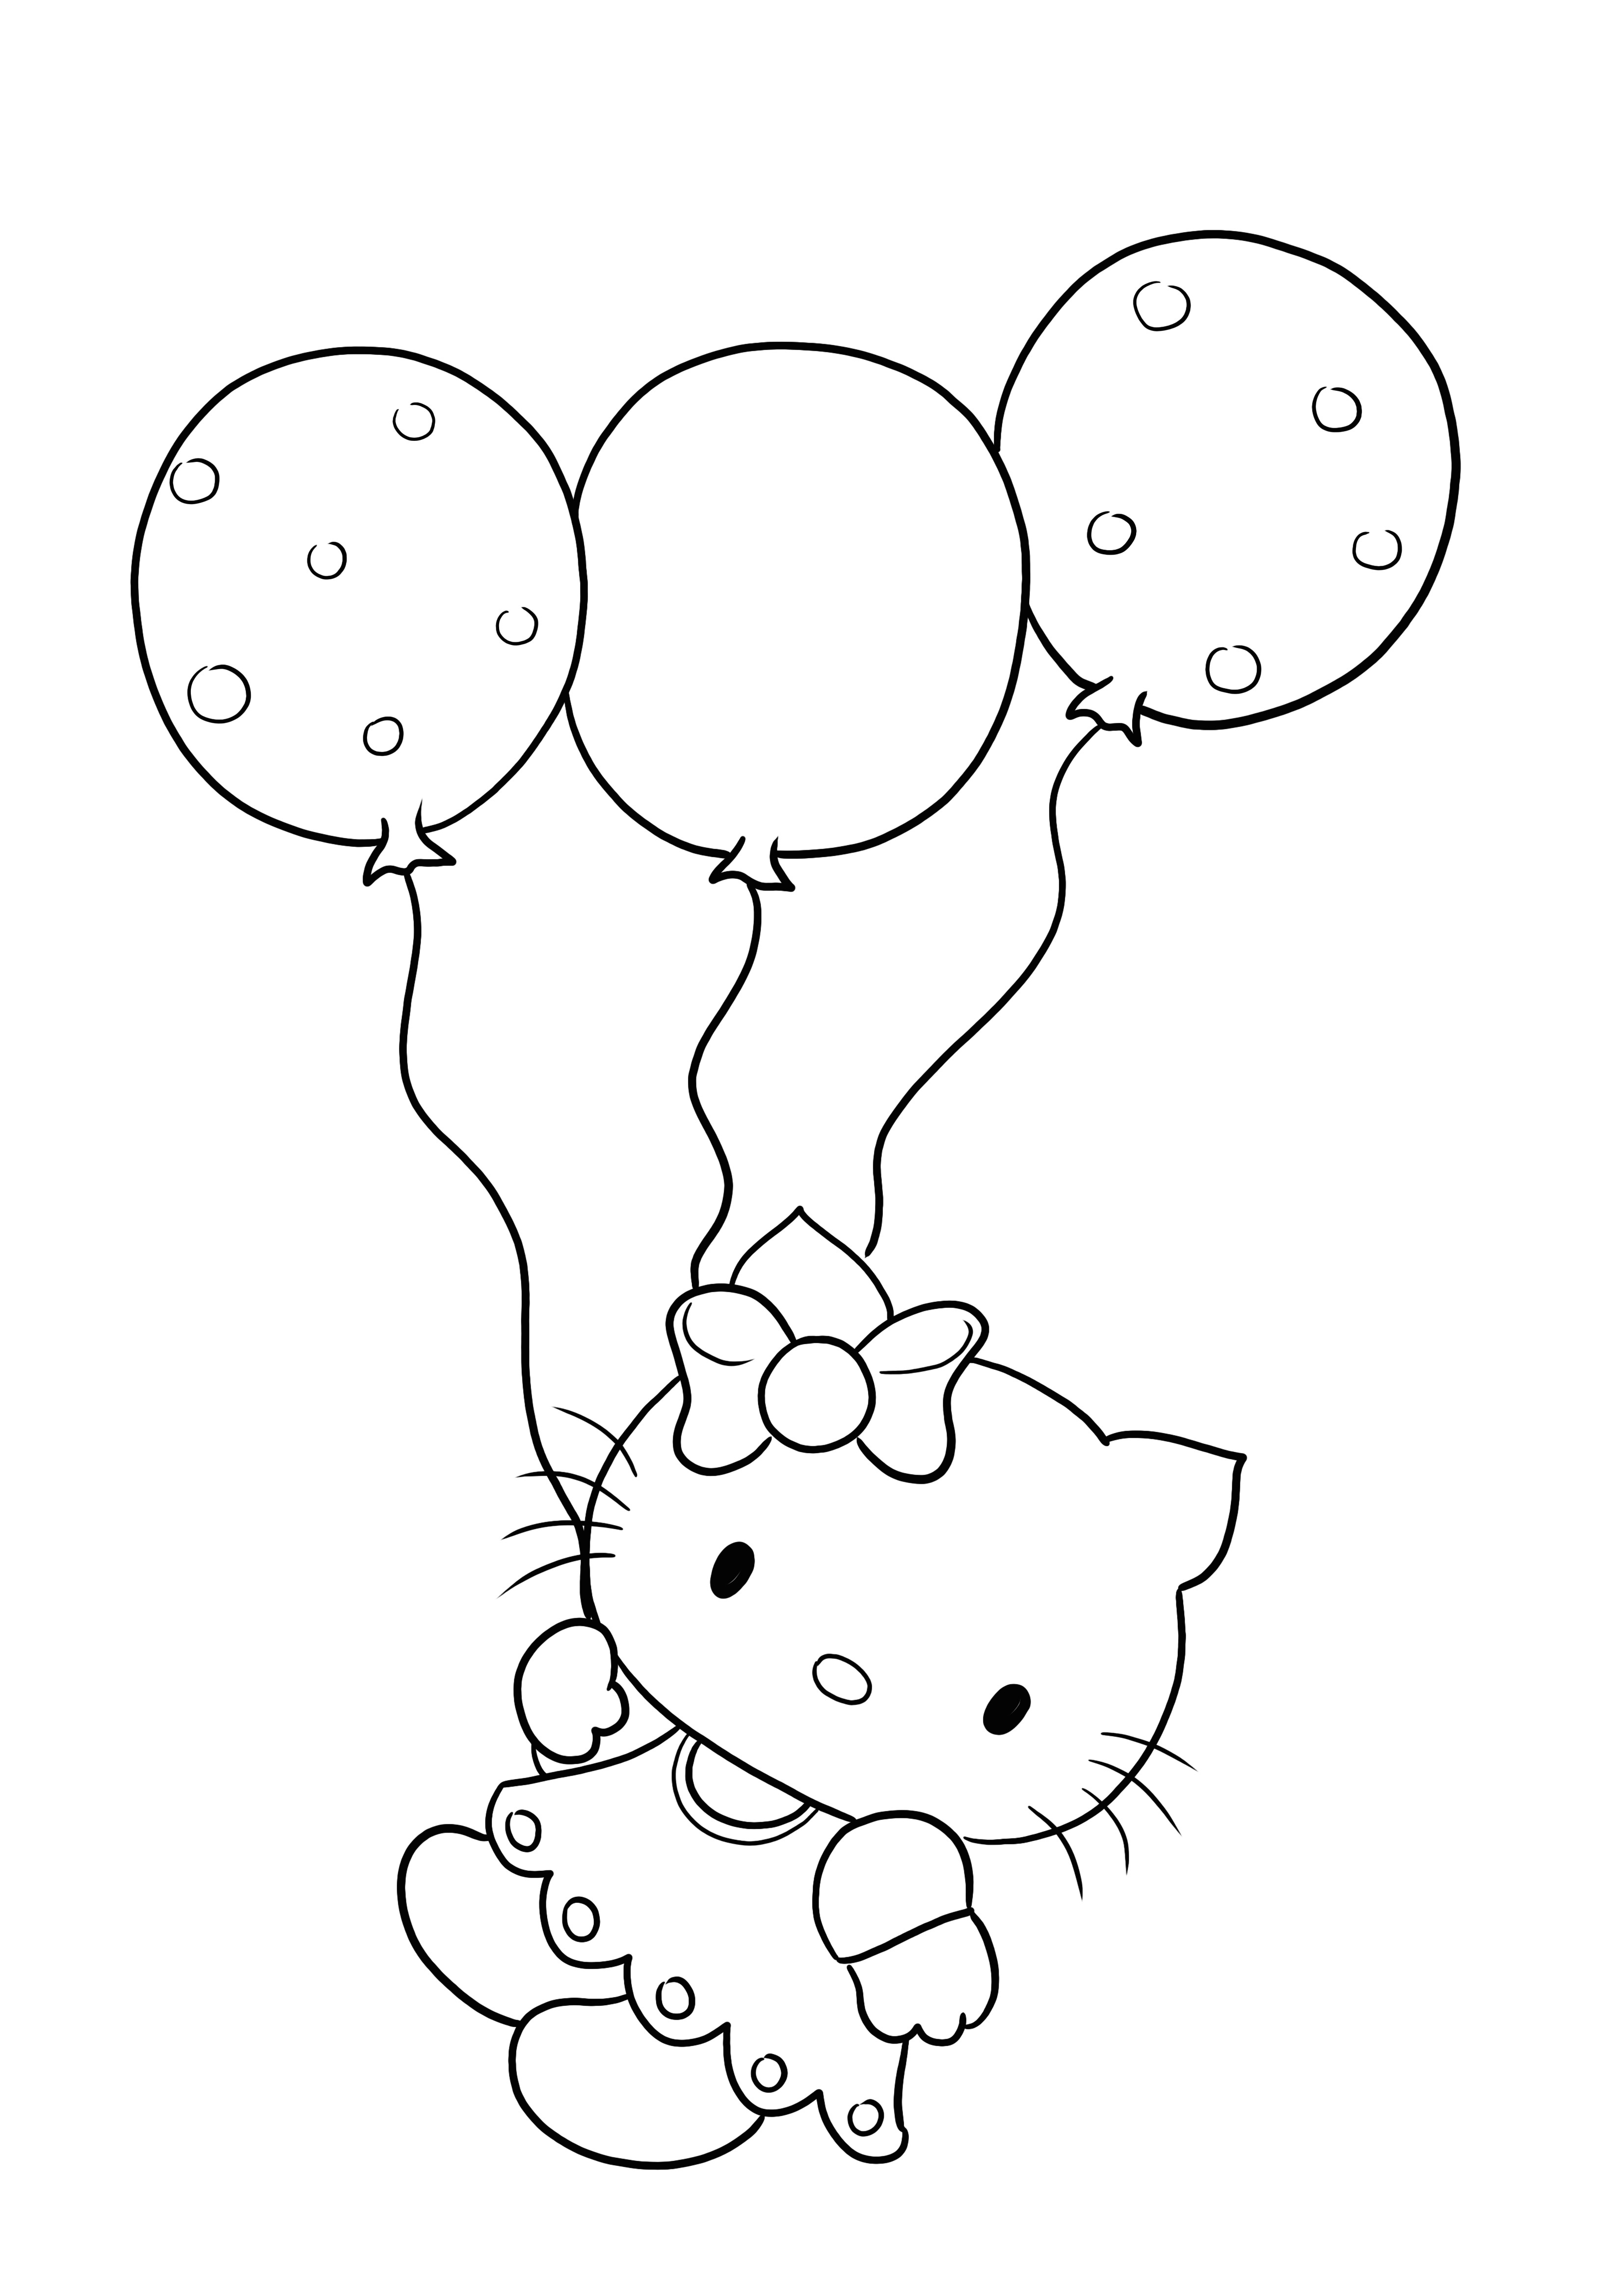 Hello Kitty și baloane de imprimat și colorat gratuit pentru copii